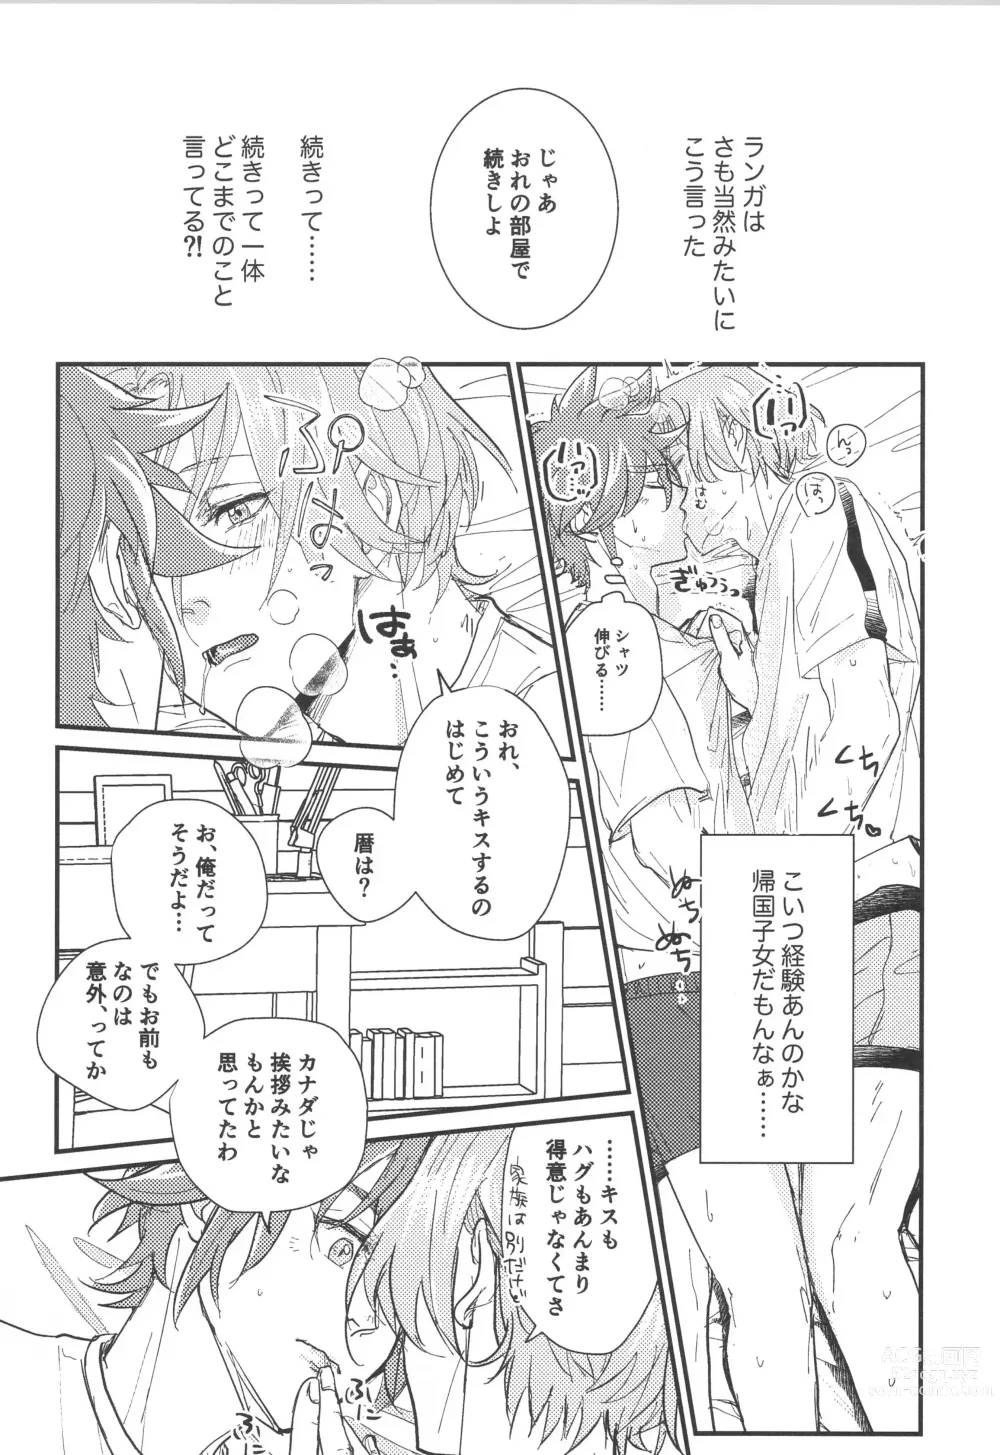 Page 16 of doujinshi Hodasare?